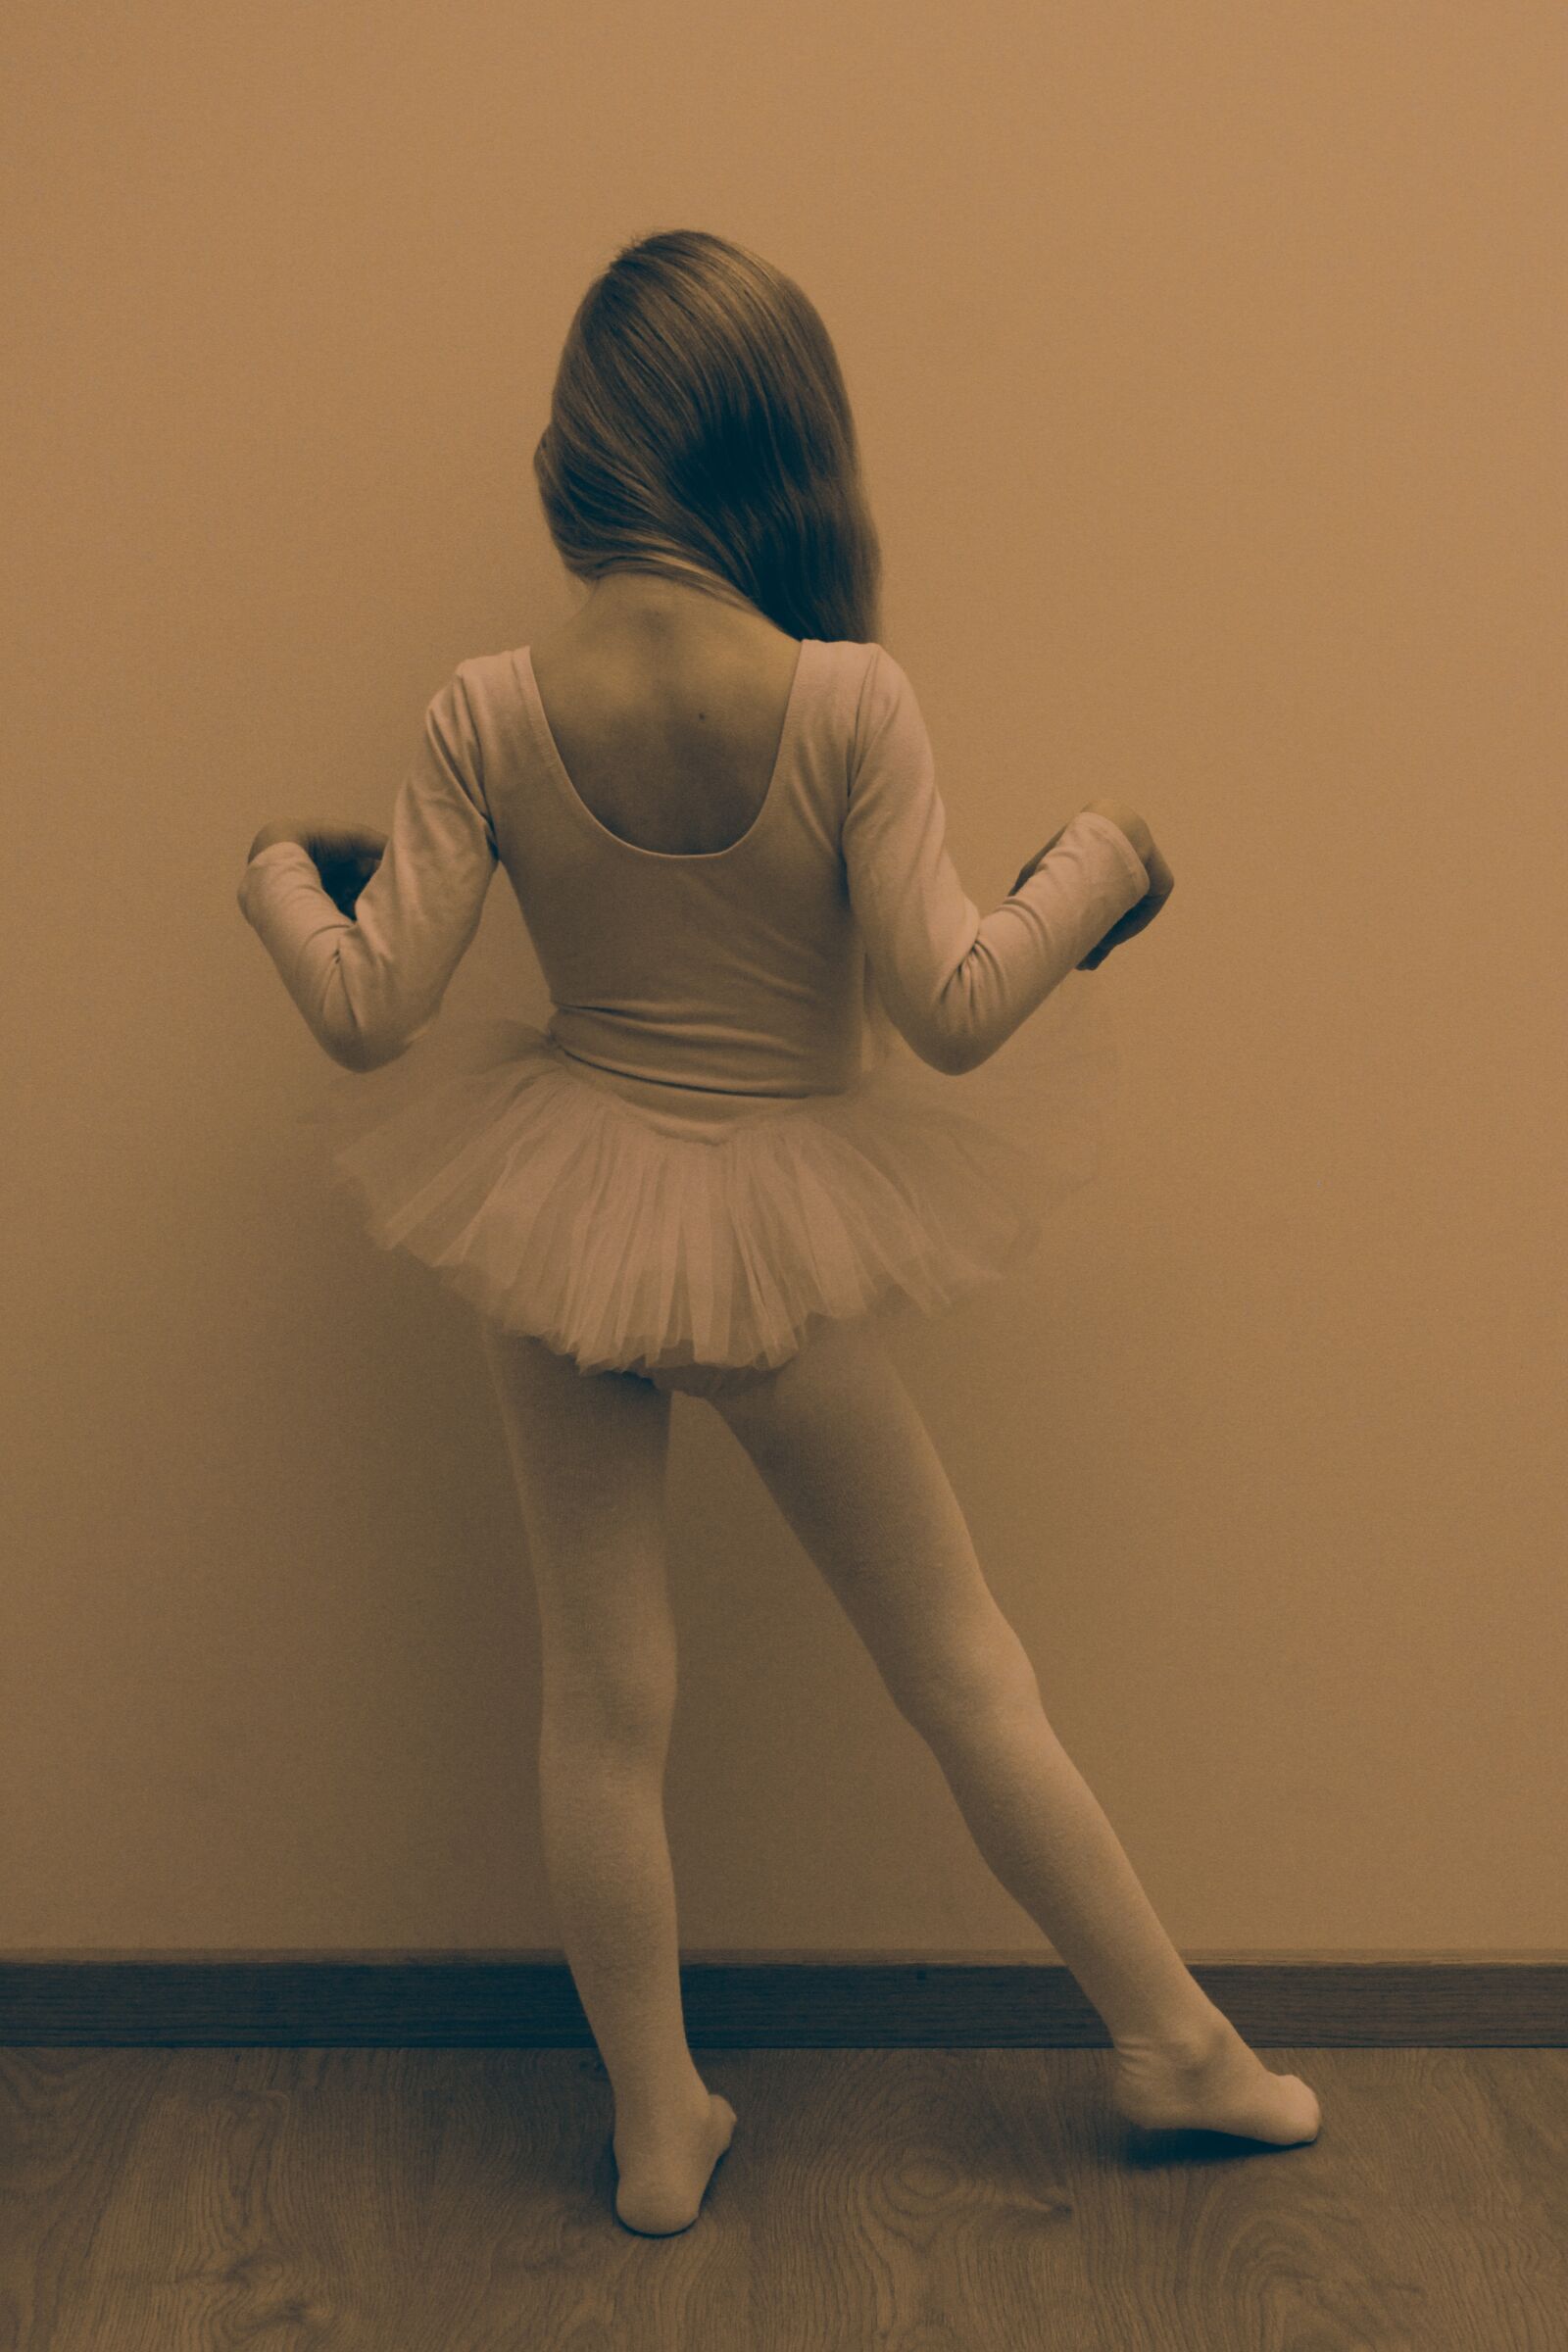 Canon EOS 550D (EOS Rebel T2i / EOS Kiss X4) sample photo. Ballerina, girl, dancer photography